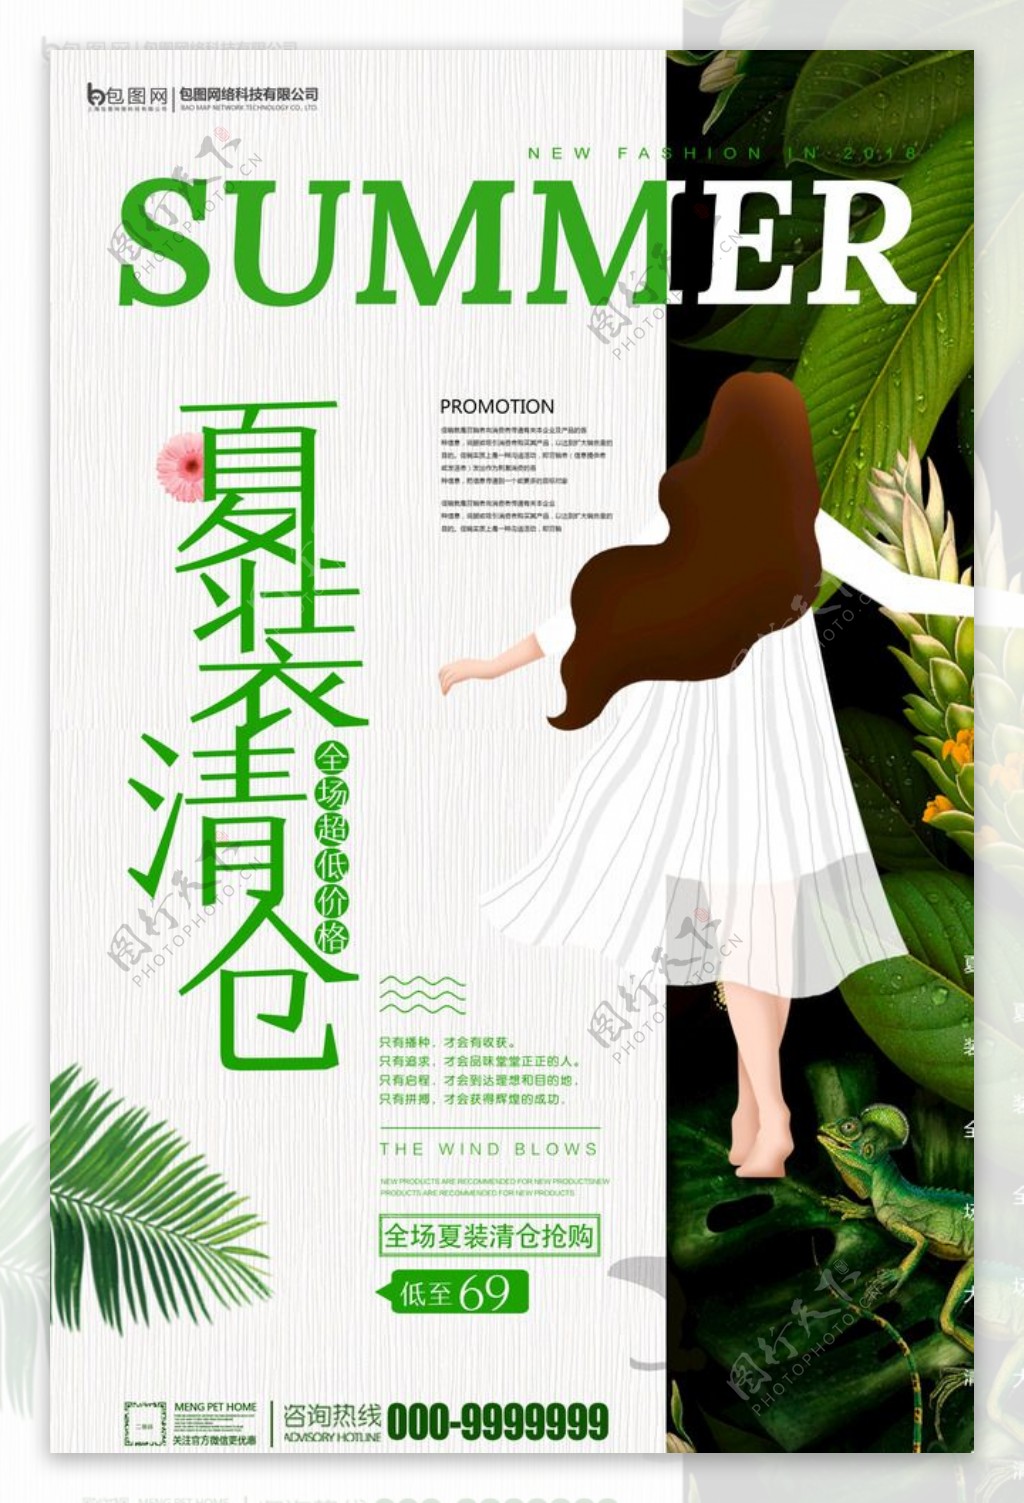 夏季促销海报